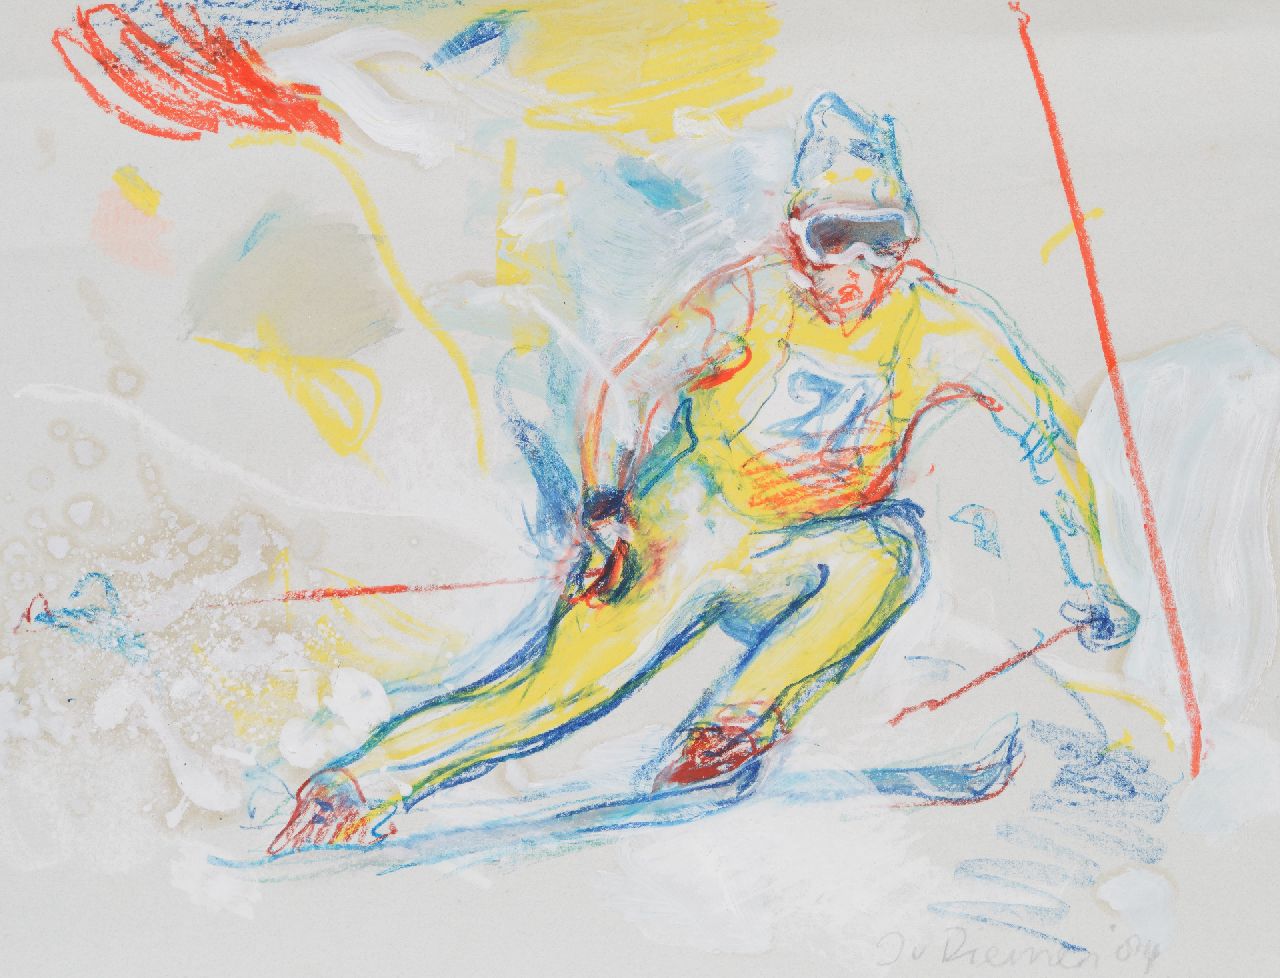 Diemen J. van | Jan van Diemen | Aquarellen en tekeningen te koop aangeboden | Slalom skiër, gouache en krijt op papier 50,0 x 65,0 cm, gesigneerd rechtsonder en gedateerd '84